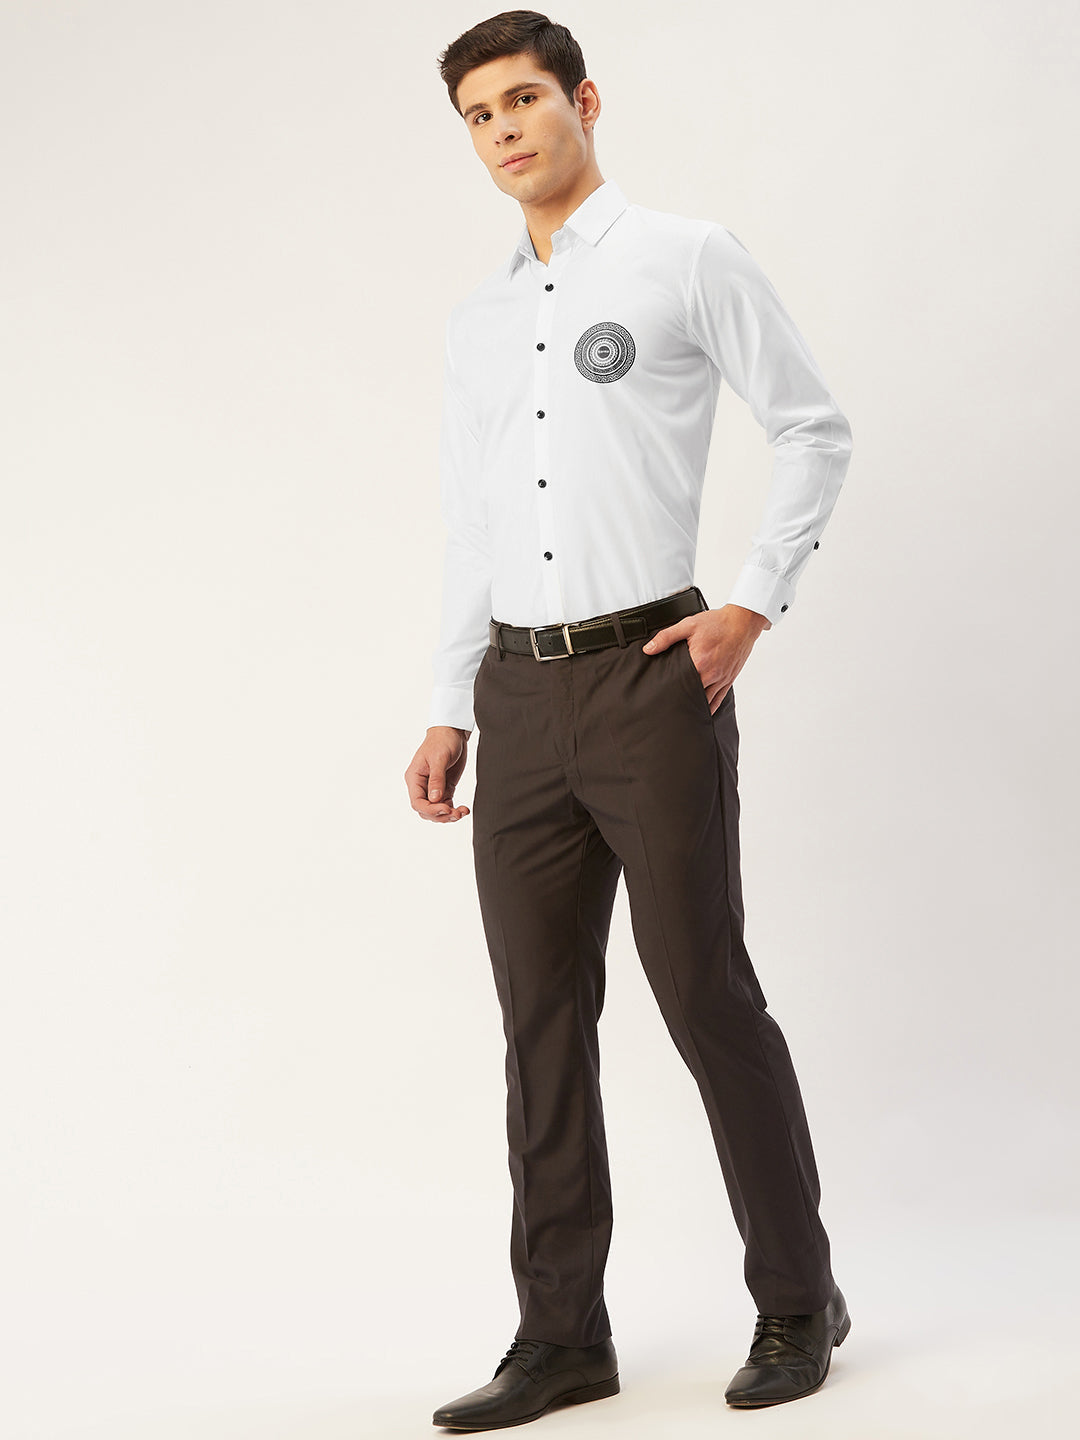 Men's Cotton Printed Formal Shirts ( SF 807White ) - Jainish